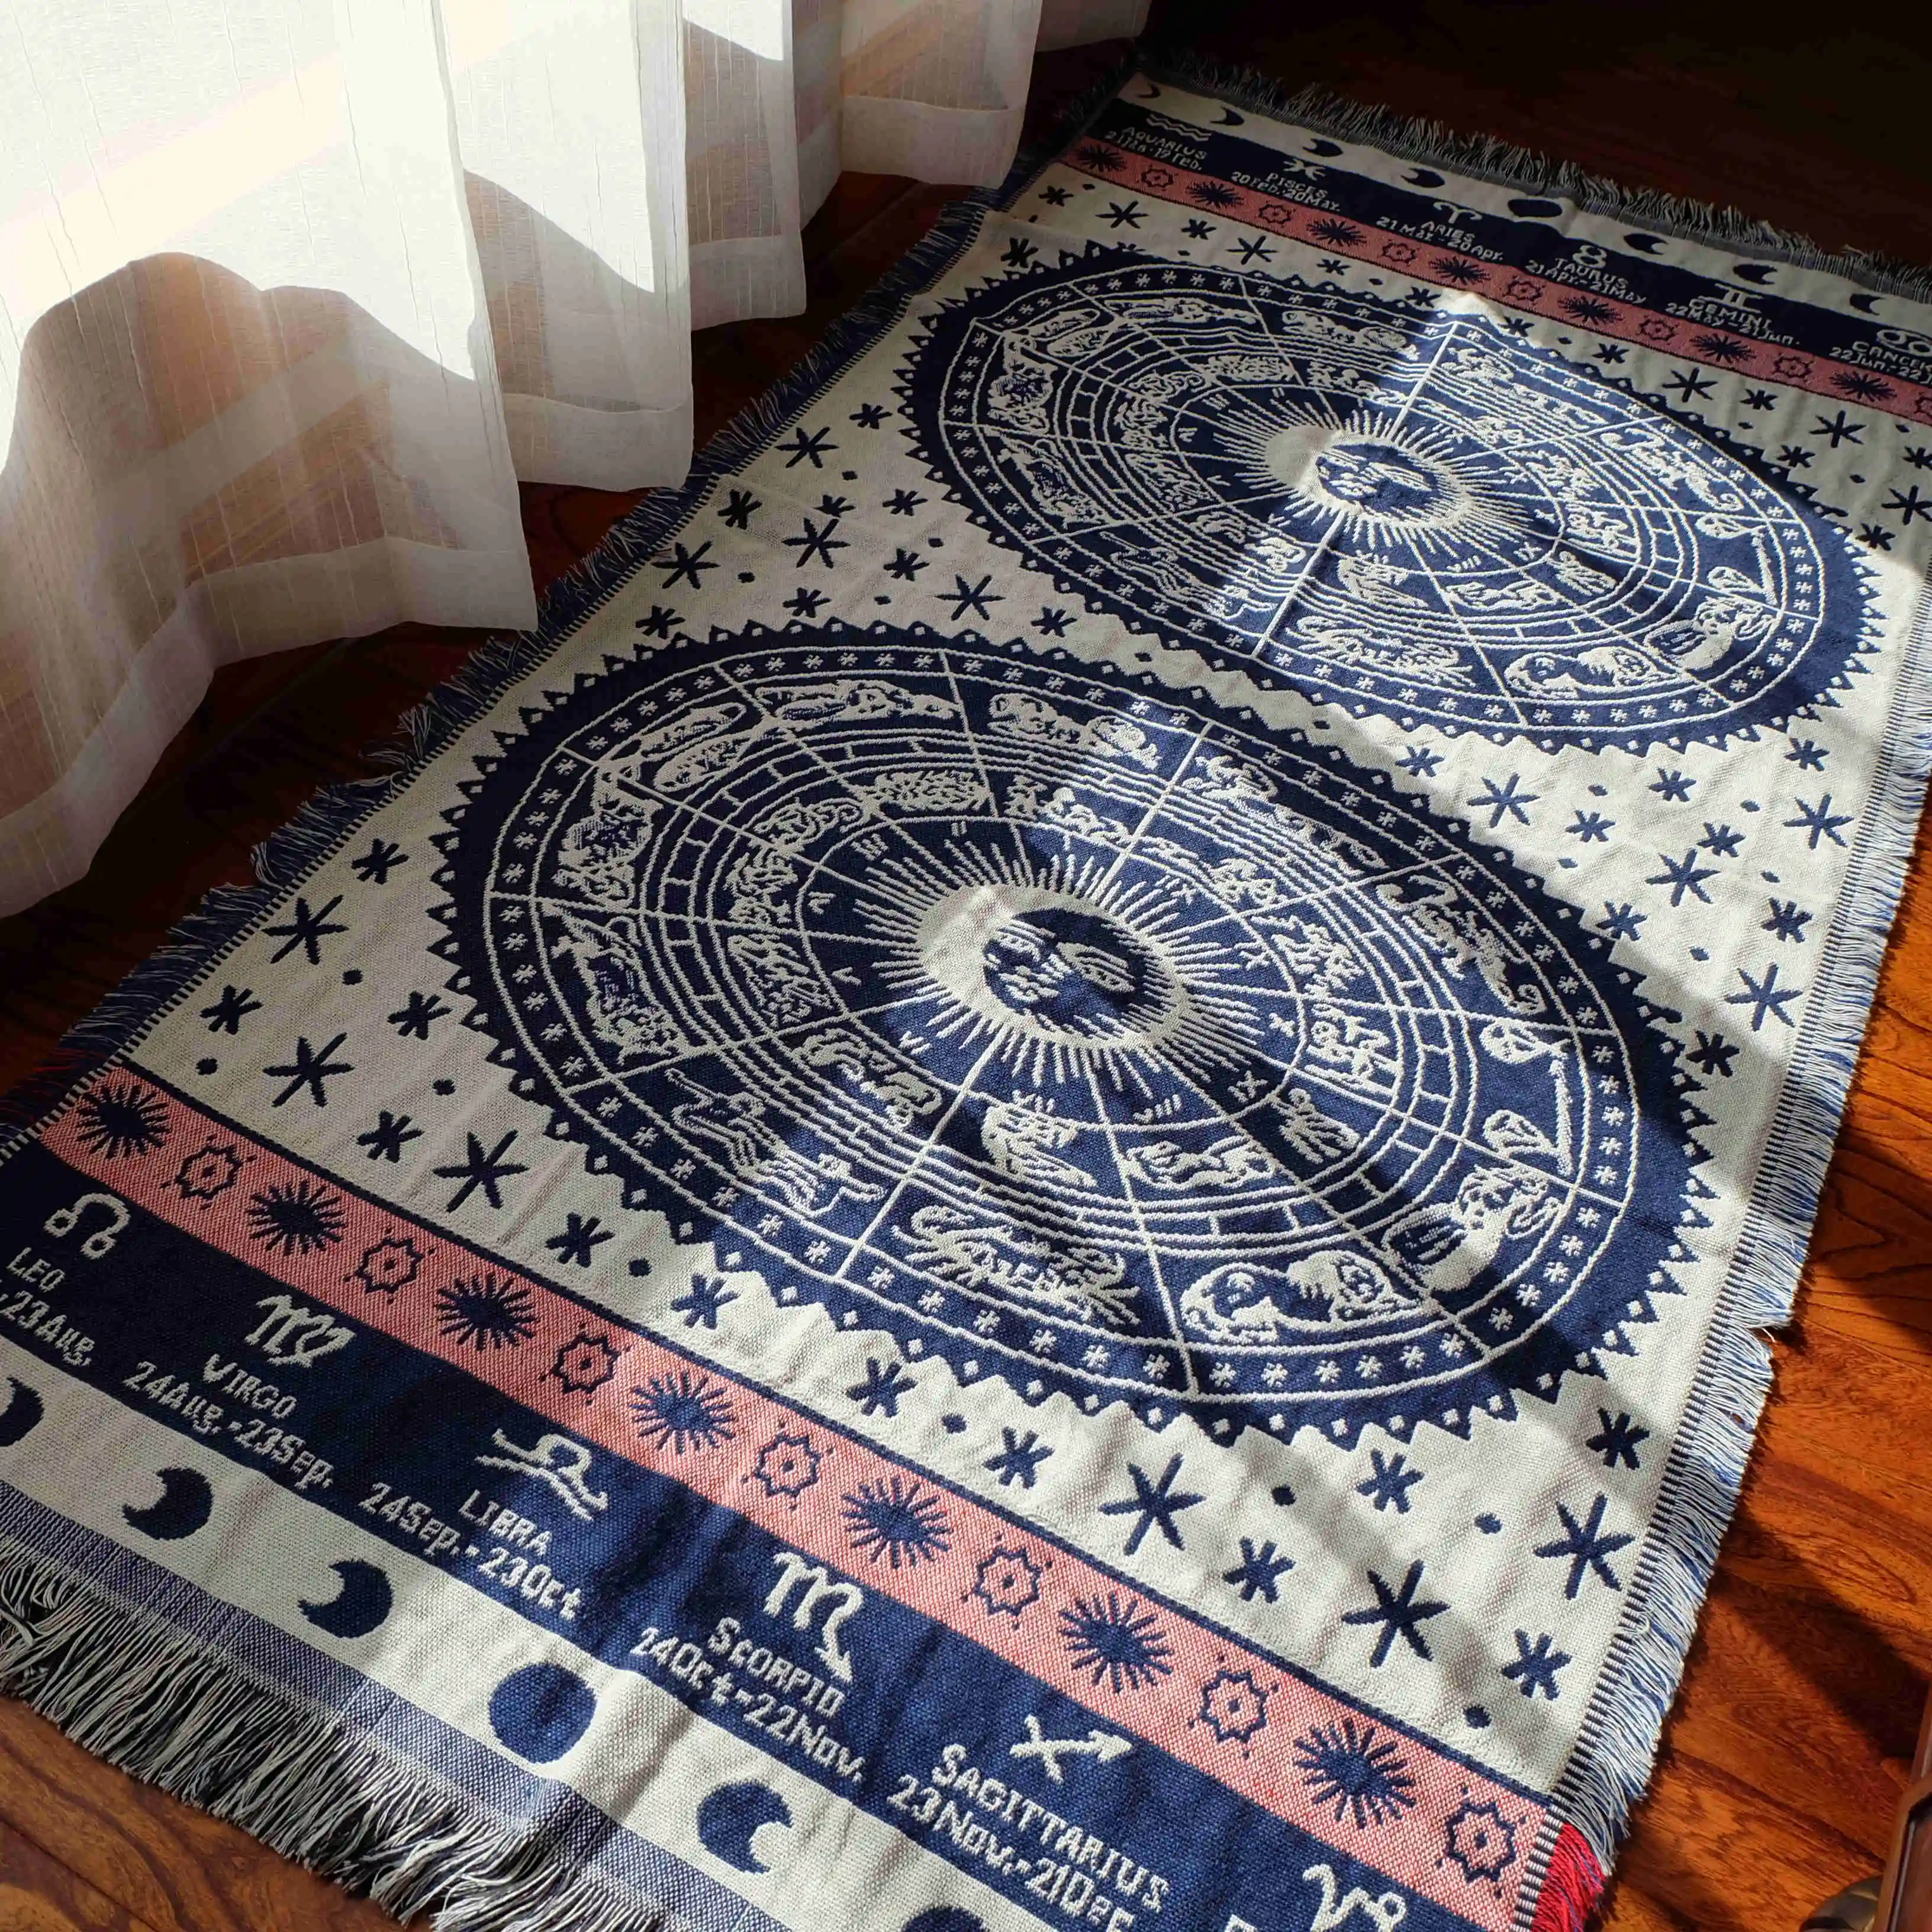 Prix de gros Constellation d'étoiles horoscope Astro plaine l'univers style tatami tapis couvre-lit canapé couverture avec frange glands